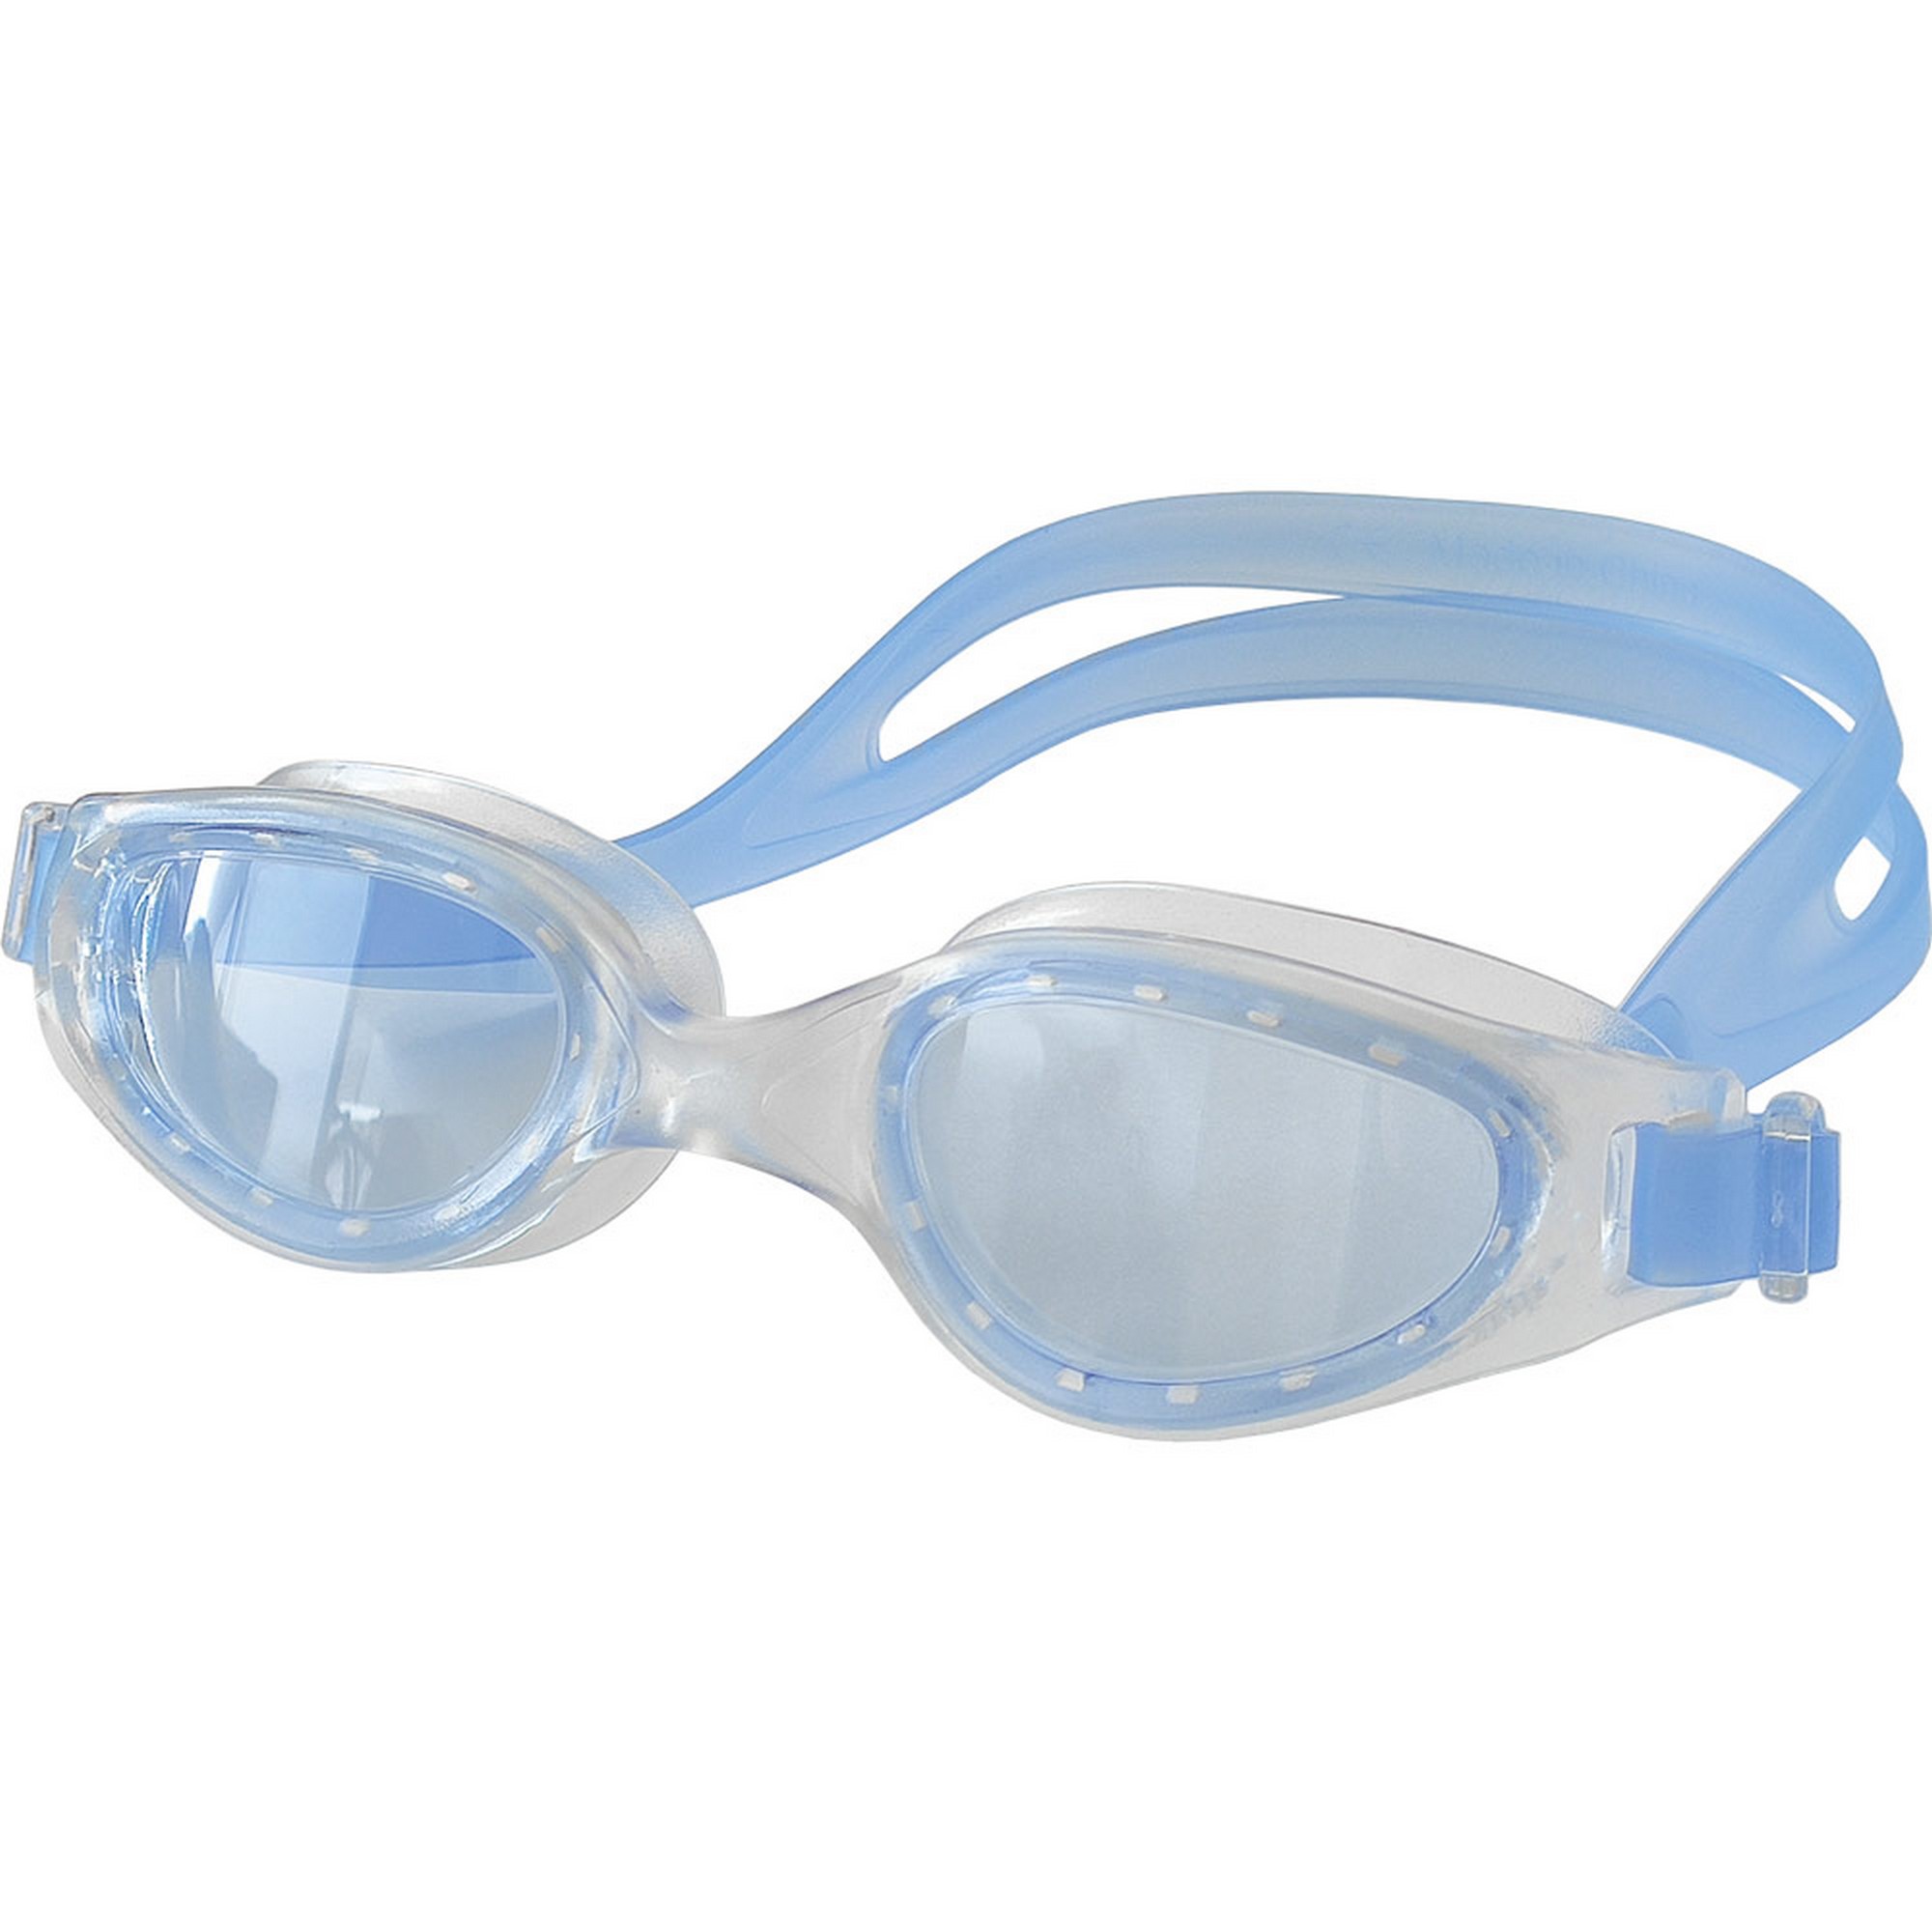 Очки для плавания взрослые Sportex E39672 синий,  - купить со скидкой